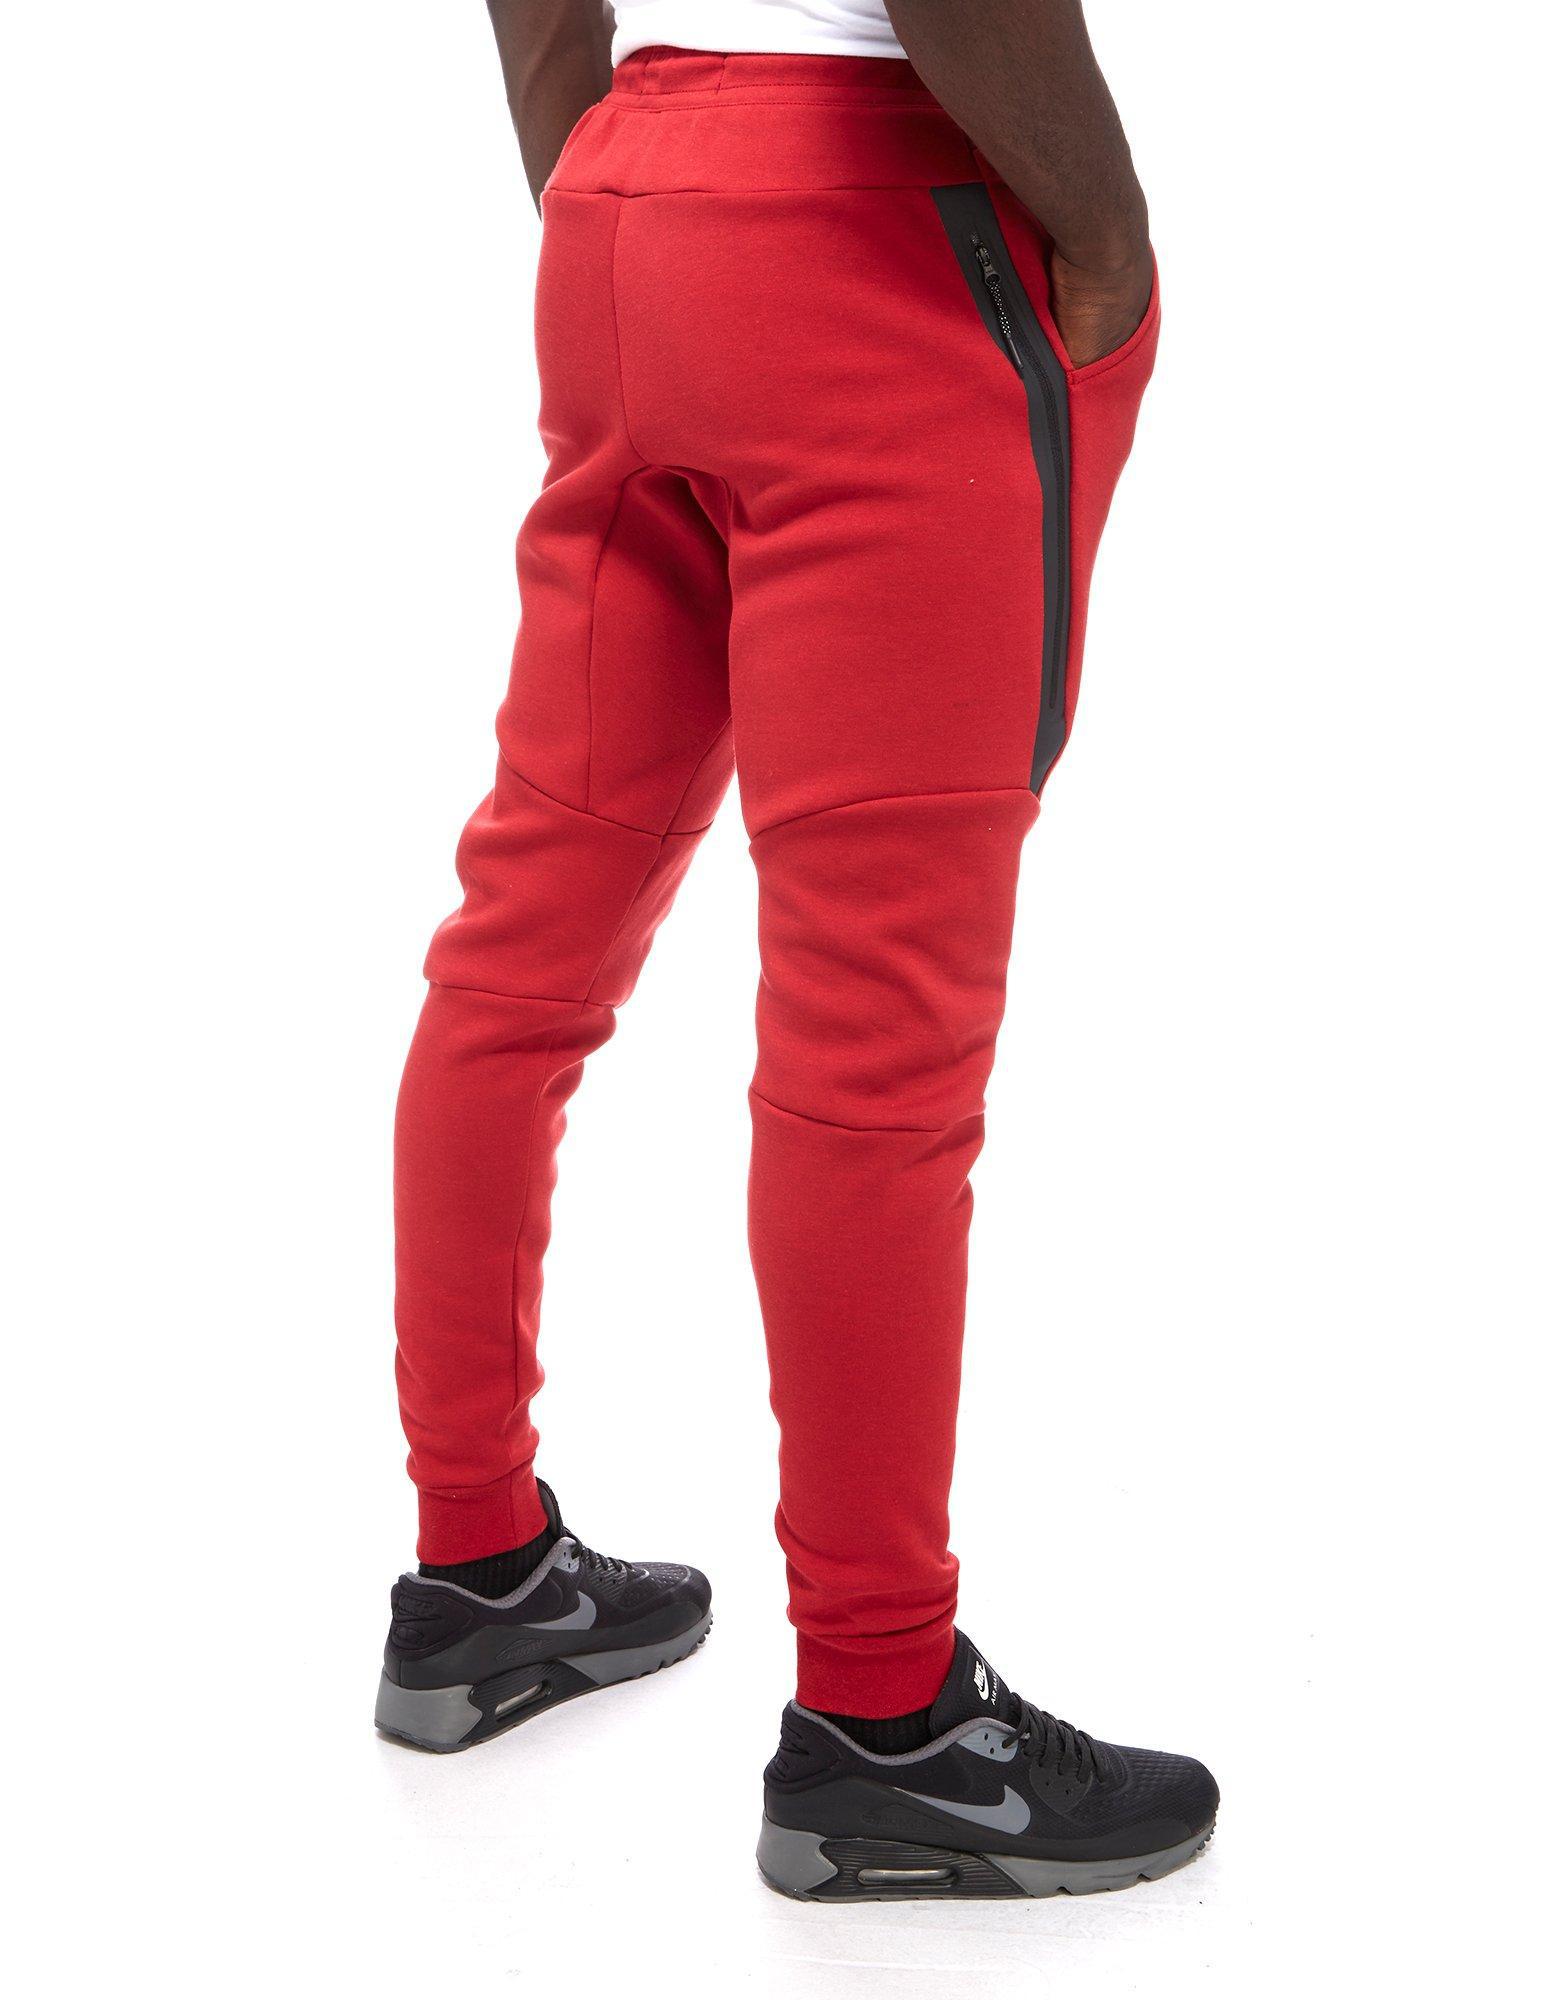 Nike Tech Fleece Pants in Red for Men - Lyst